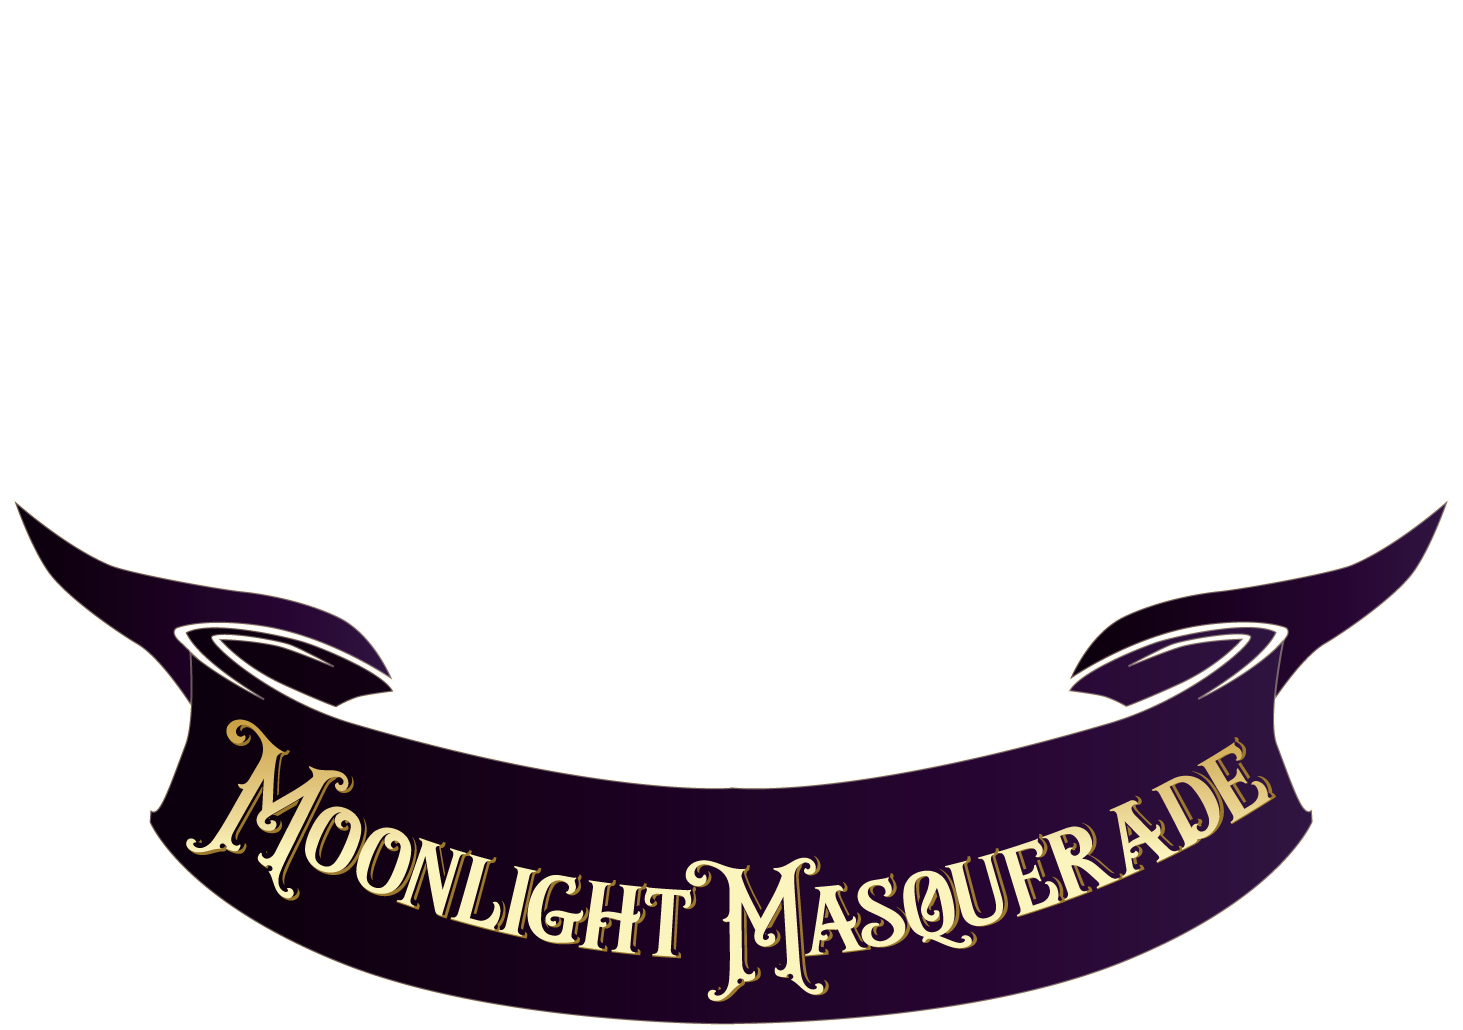 Moonlight Masquerade 2021 logo